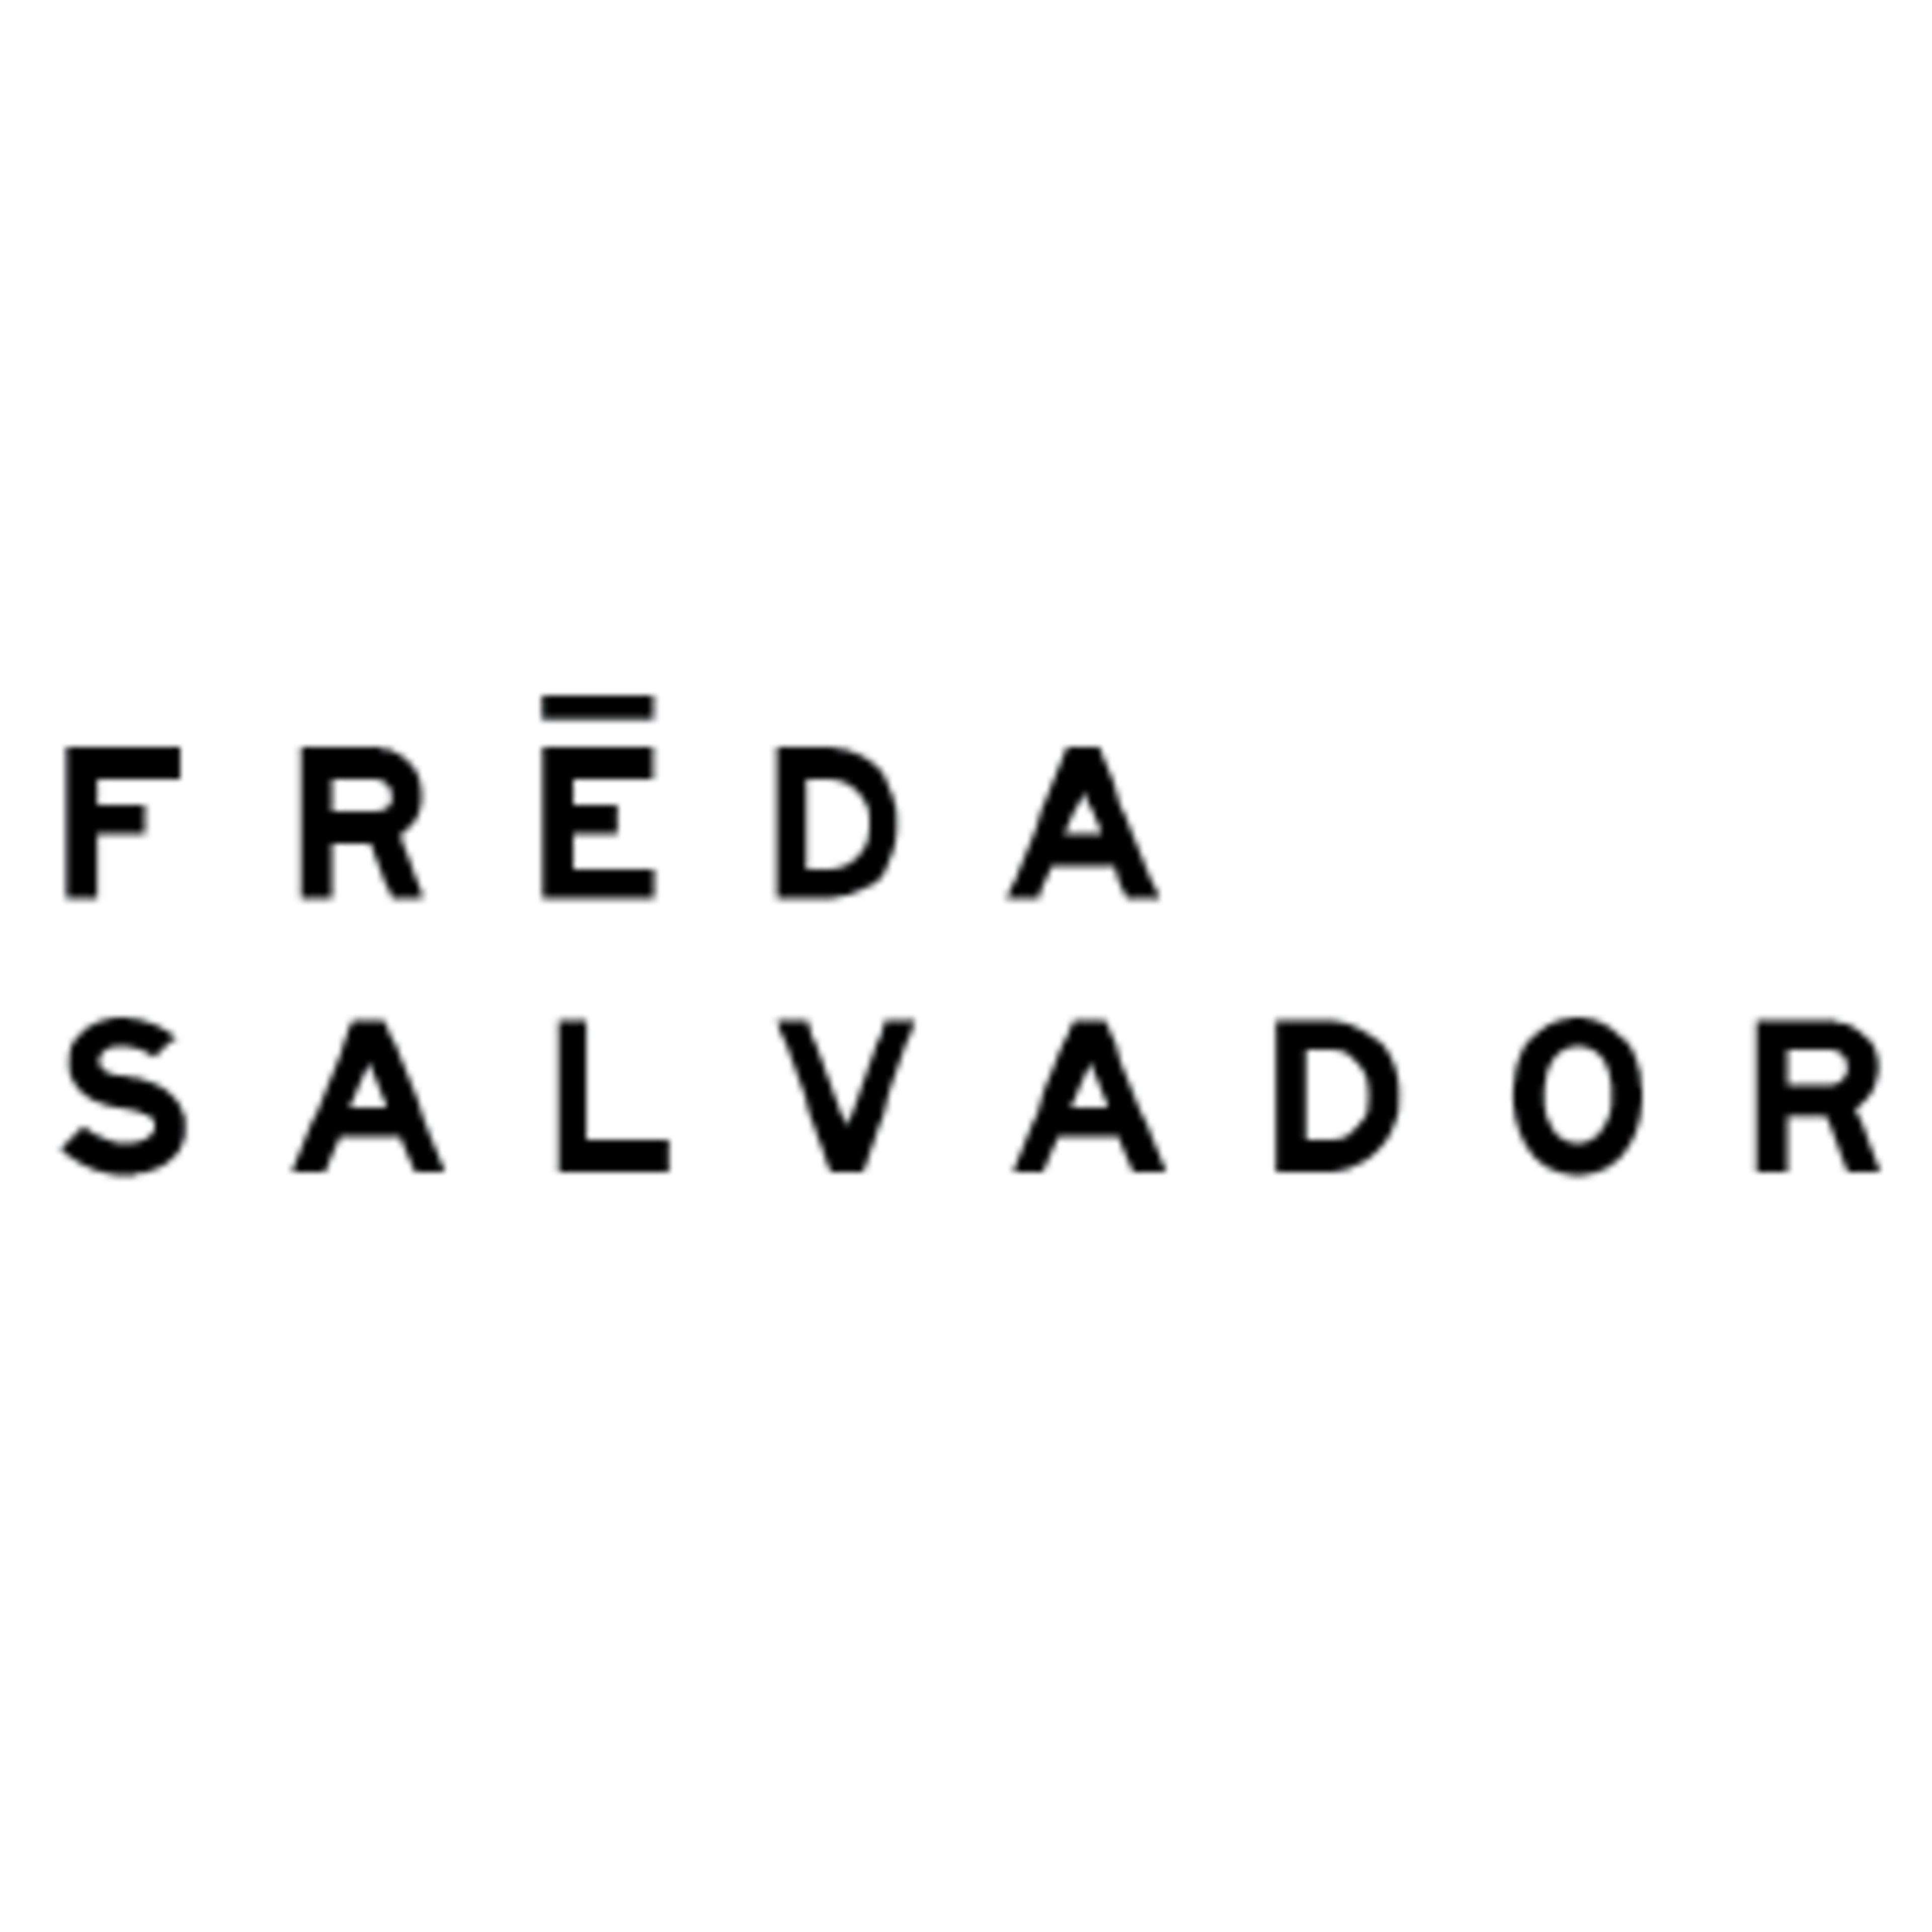 Freda Salvador Code